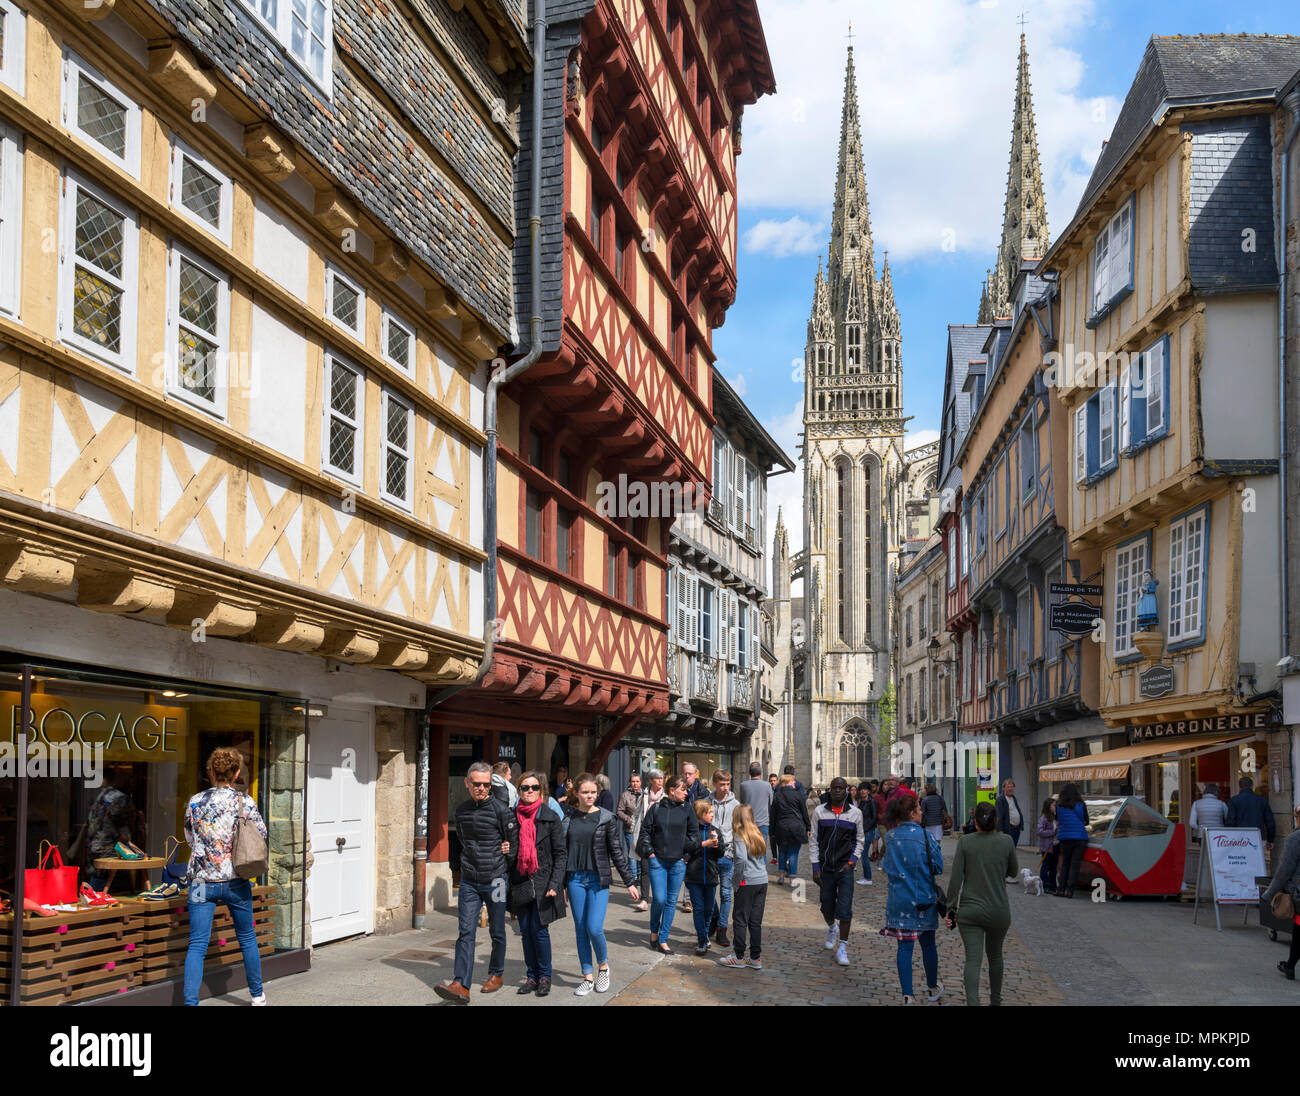 Tiendas de Rue Kereon mirando hacia la catedral, Quimper, Finisterre, Bretaña, Francia Foto de stock